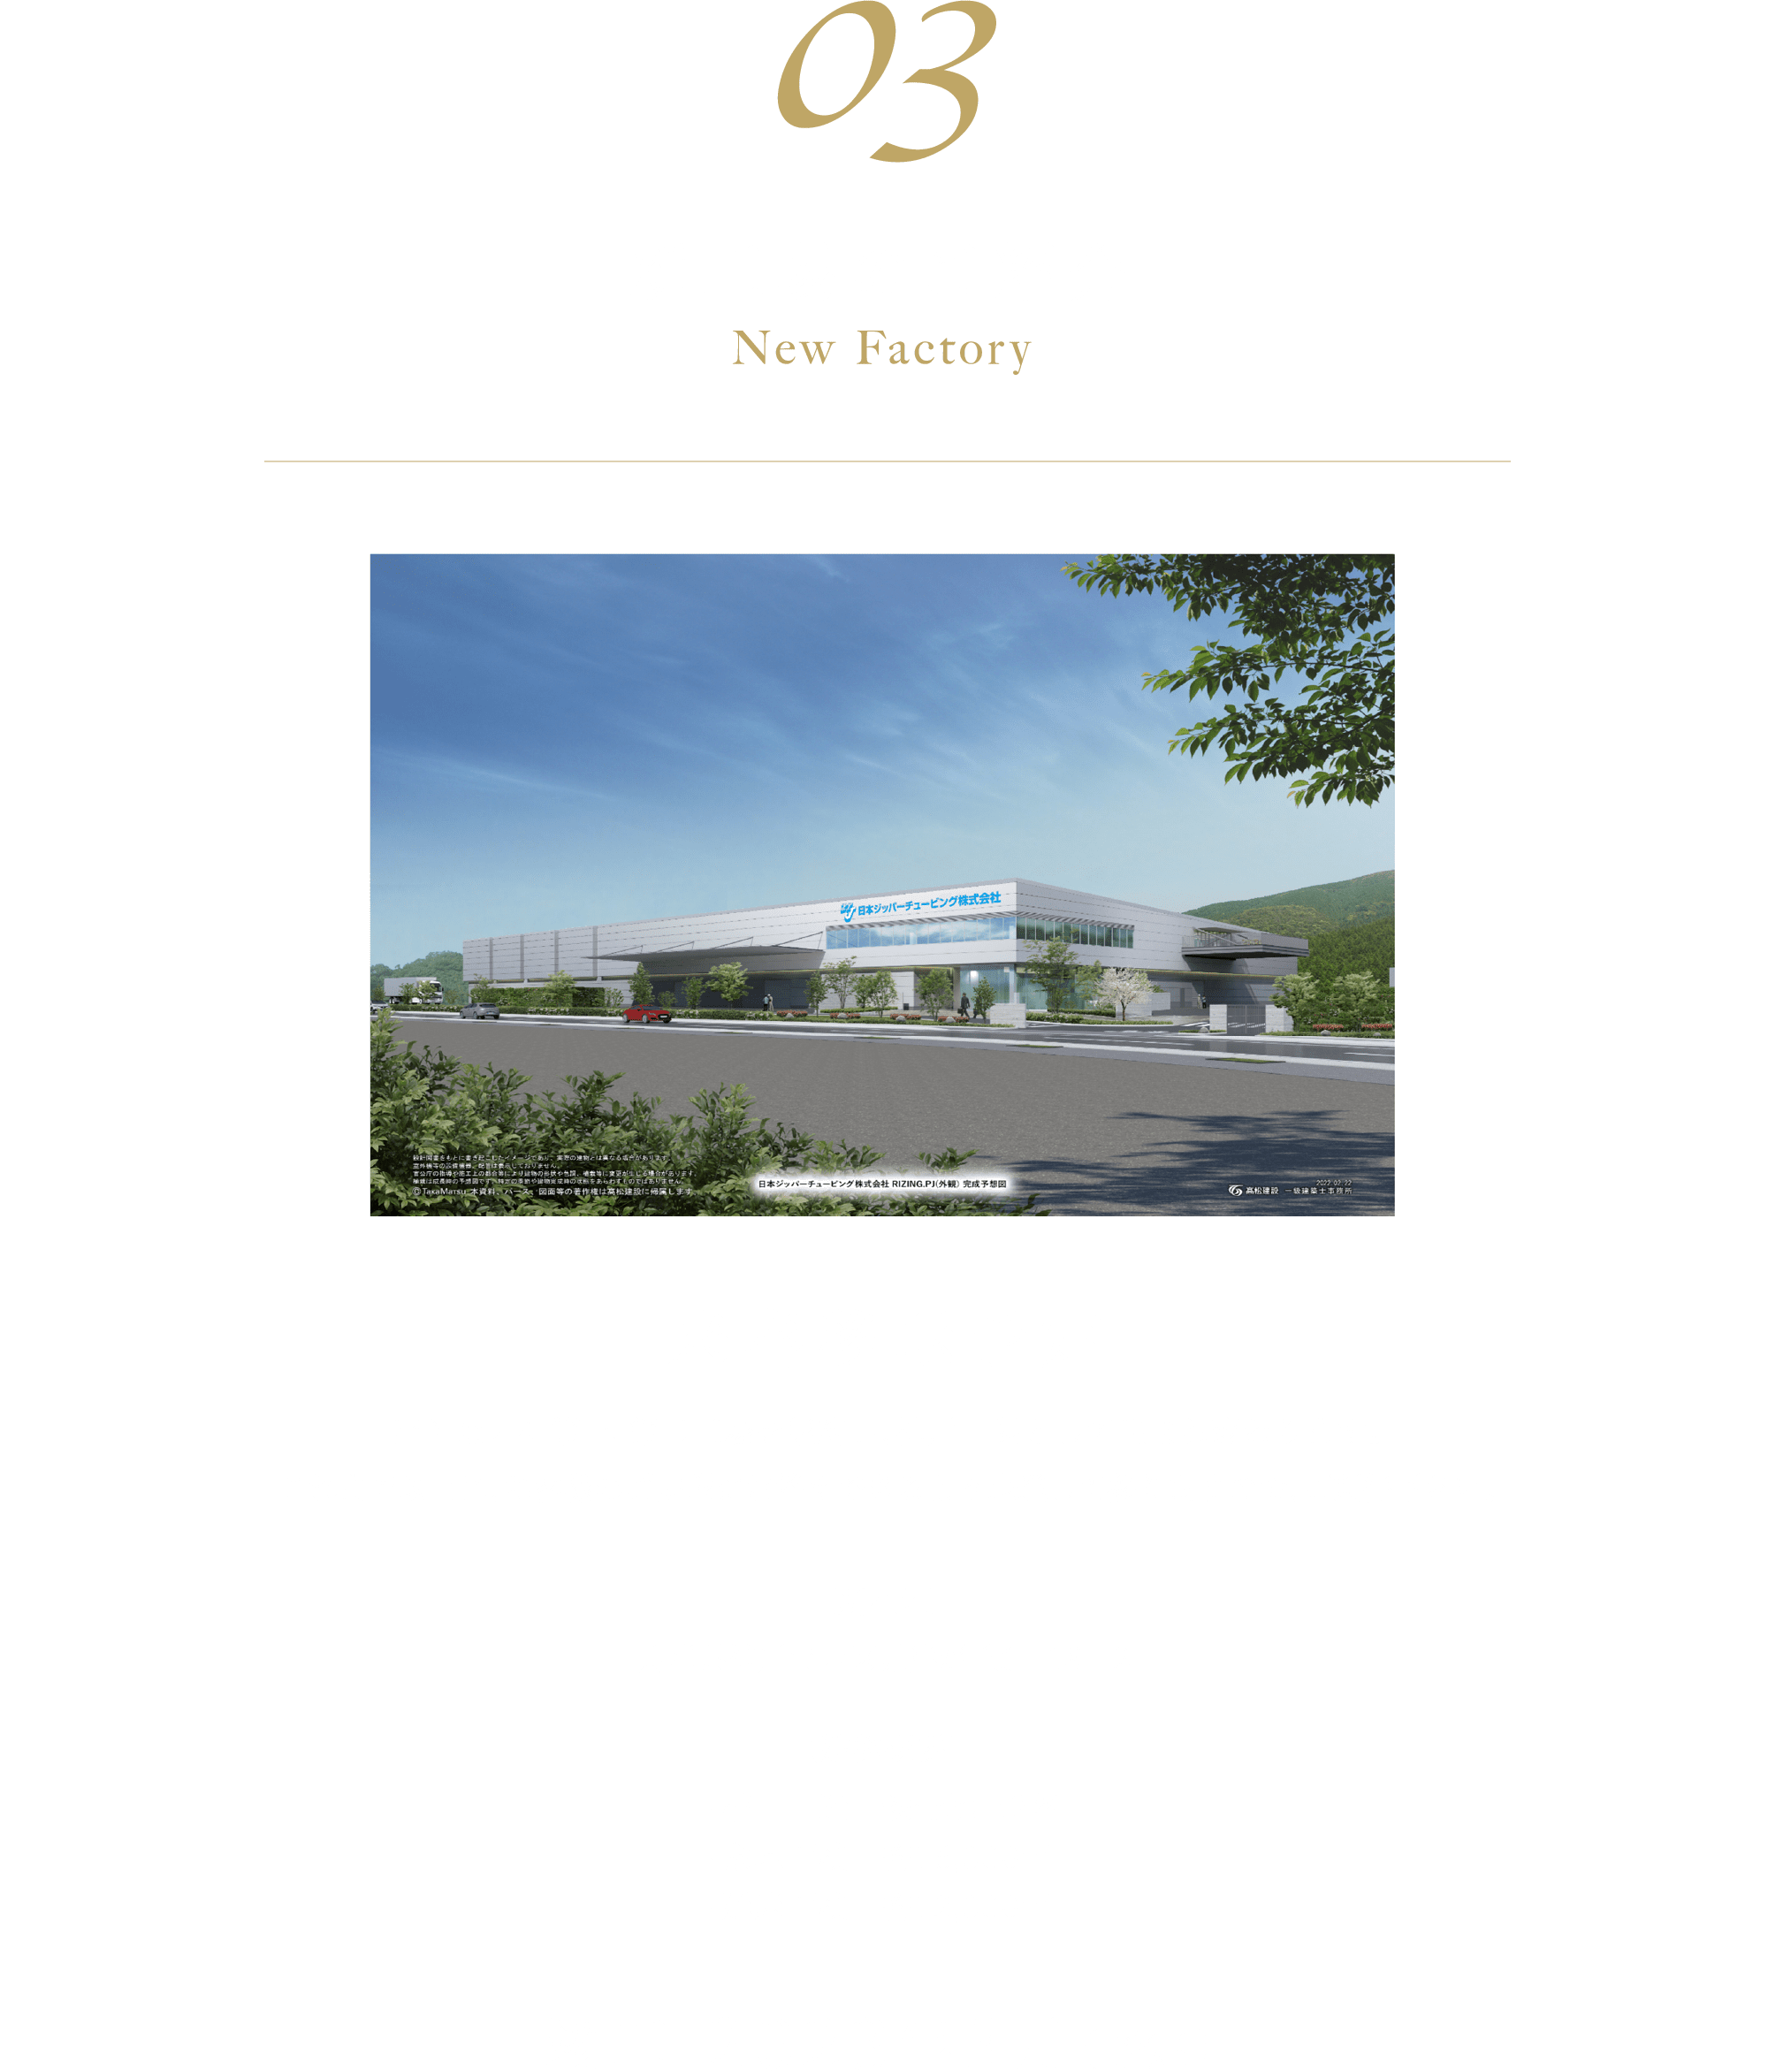 03 新工場のご紹介 来春移転予定 当社は西神第一、第二工場を集約し、神戸工場として生まれ変わります。これまで以上に、お客様のご要望にお答えできるよう邁進して参りますので、ご期待下さい。【所在地】兵庫県神戸市西区見津が丘6-18-2【建物概要】・構造：鉄骨地上２階 ・敷地面積：約16,000m2 ・延床面積：約12,00m2 竣工2023年3月（予定）